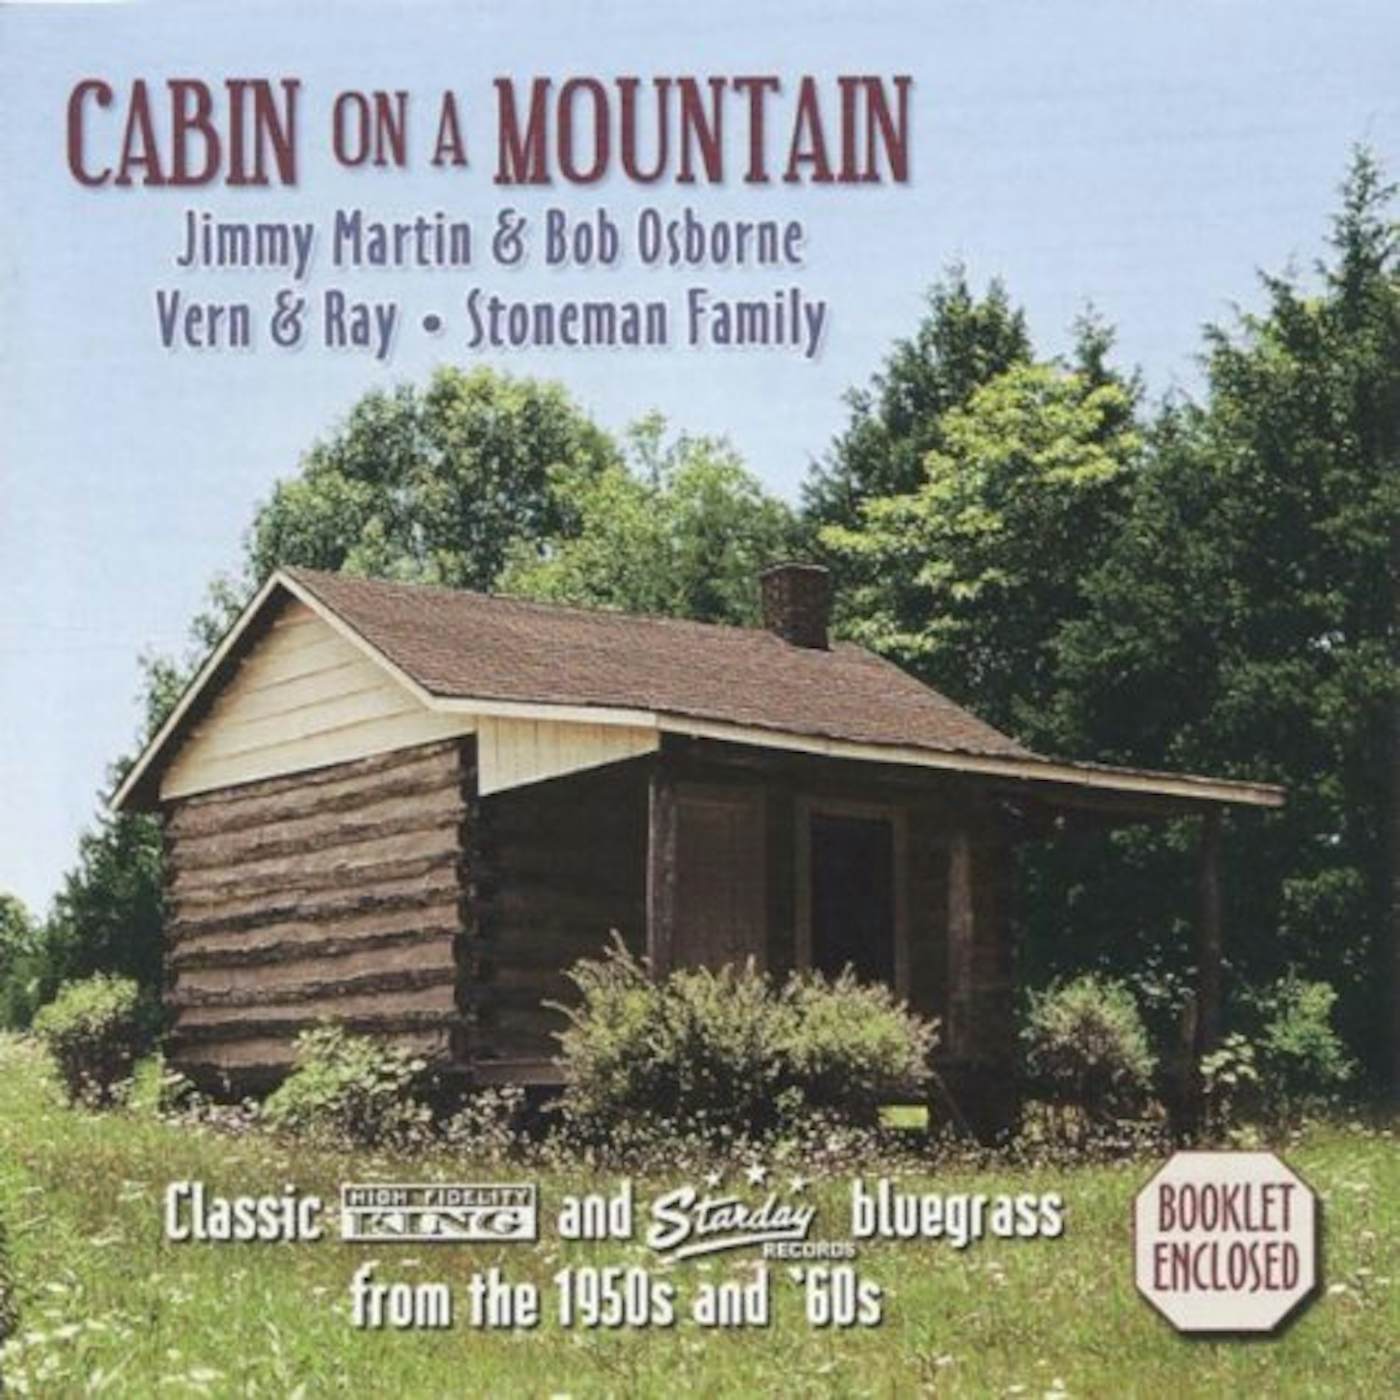 Jimmy Martin CABIN ON A MOUNTAIN CD